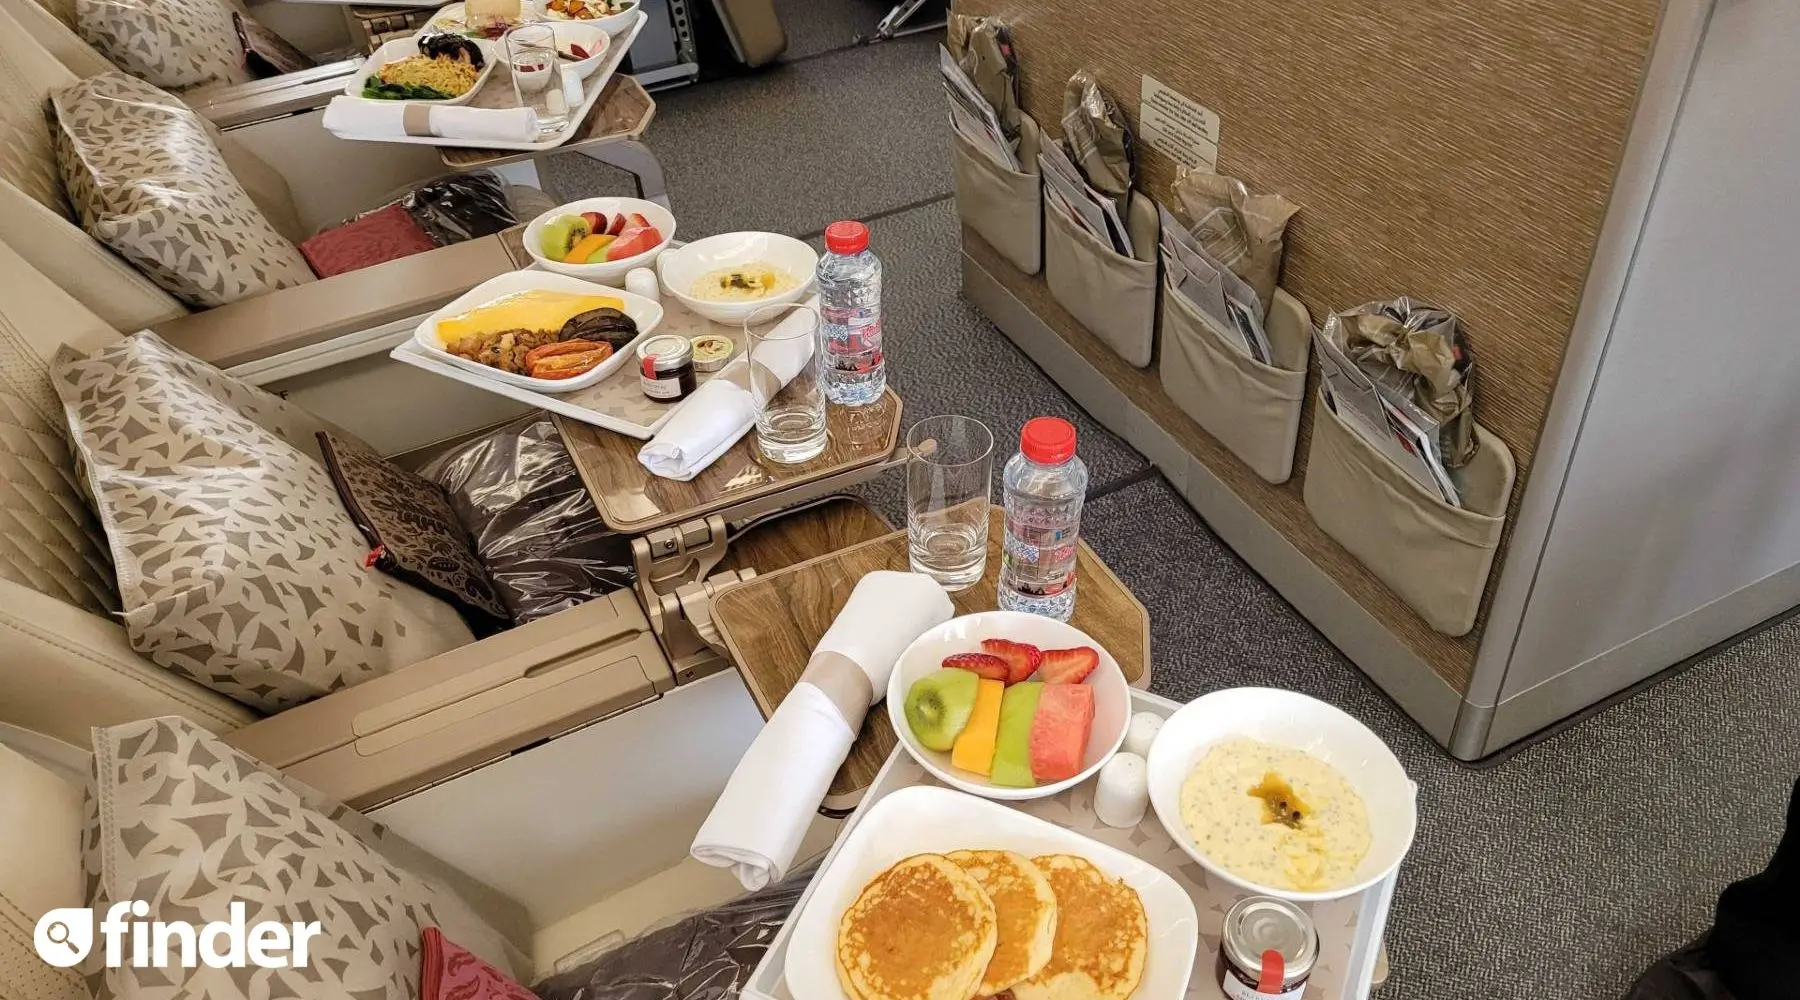 Emirates food offerings - Premium Economy